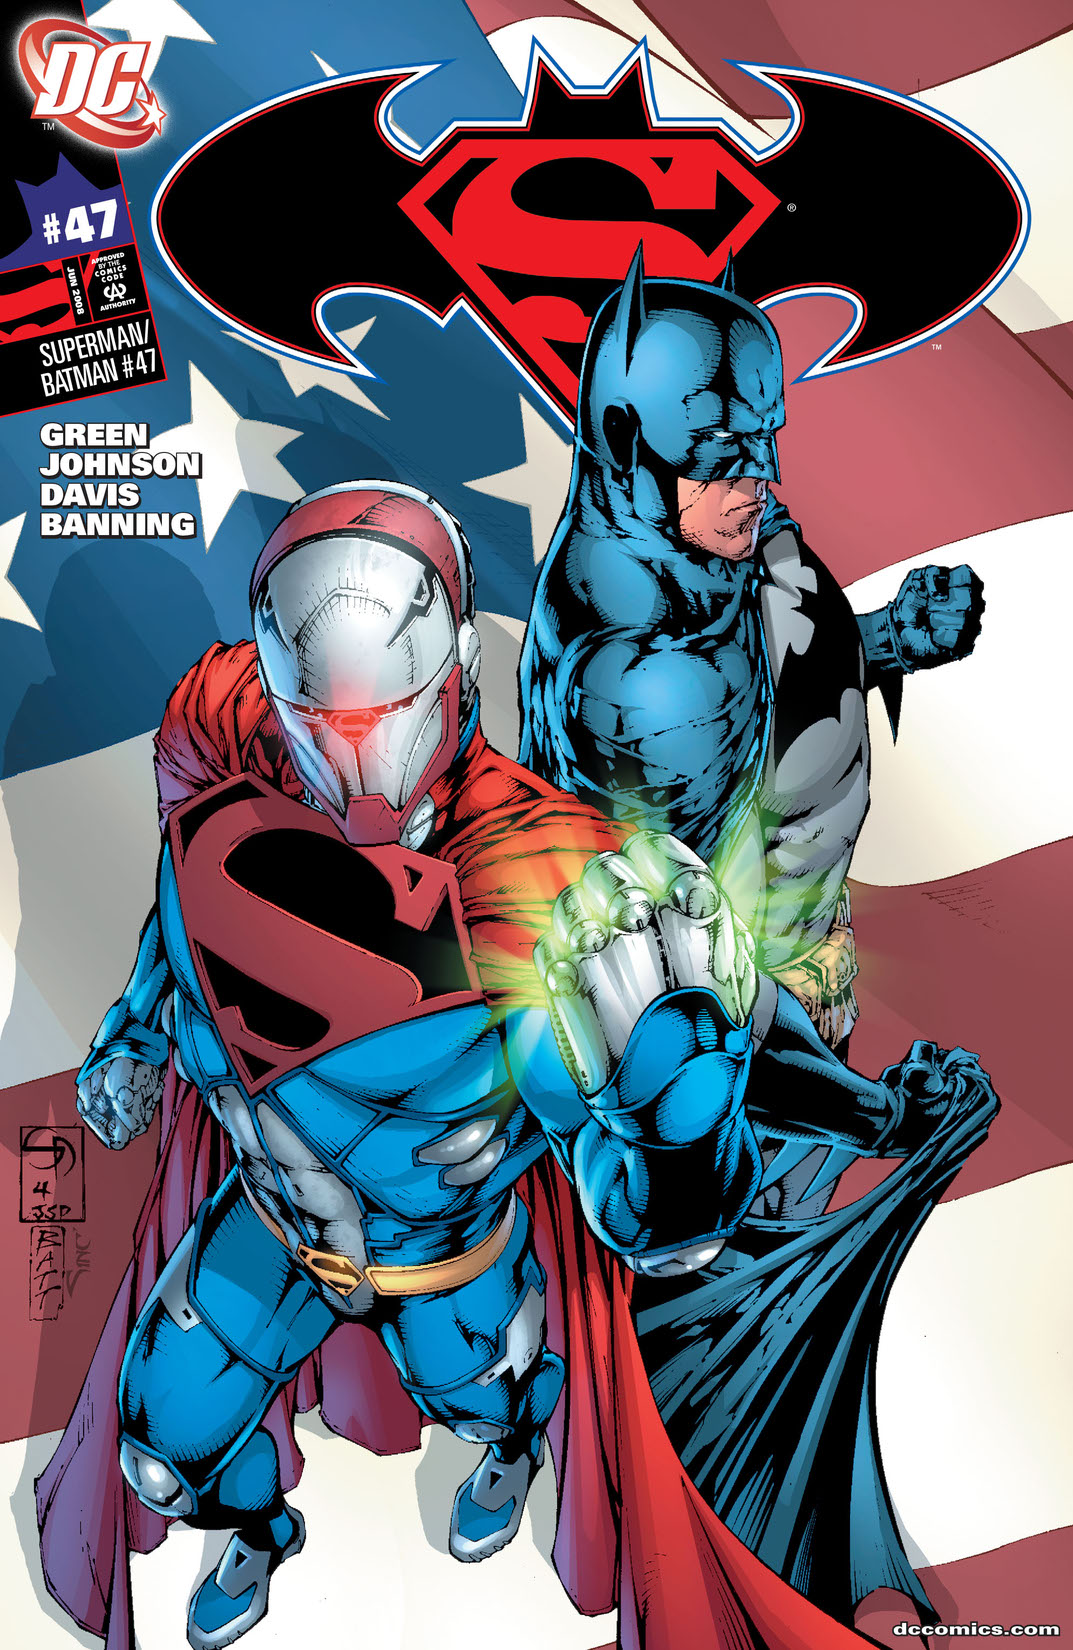 Superman/Batman #47 preview images